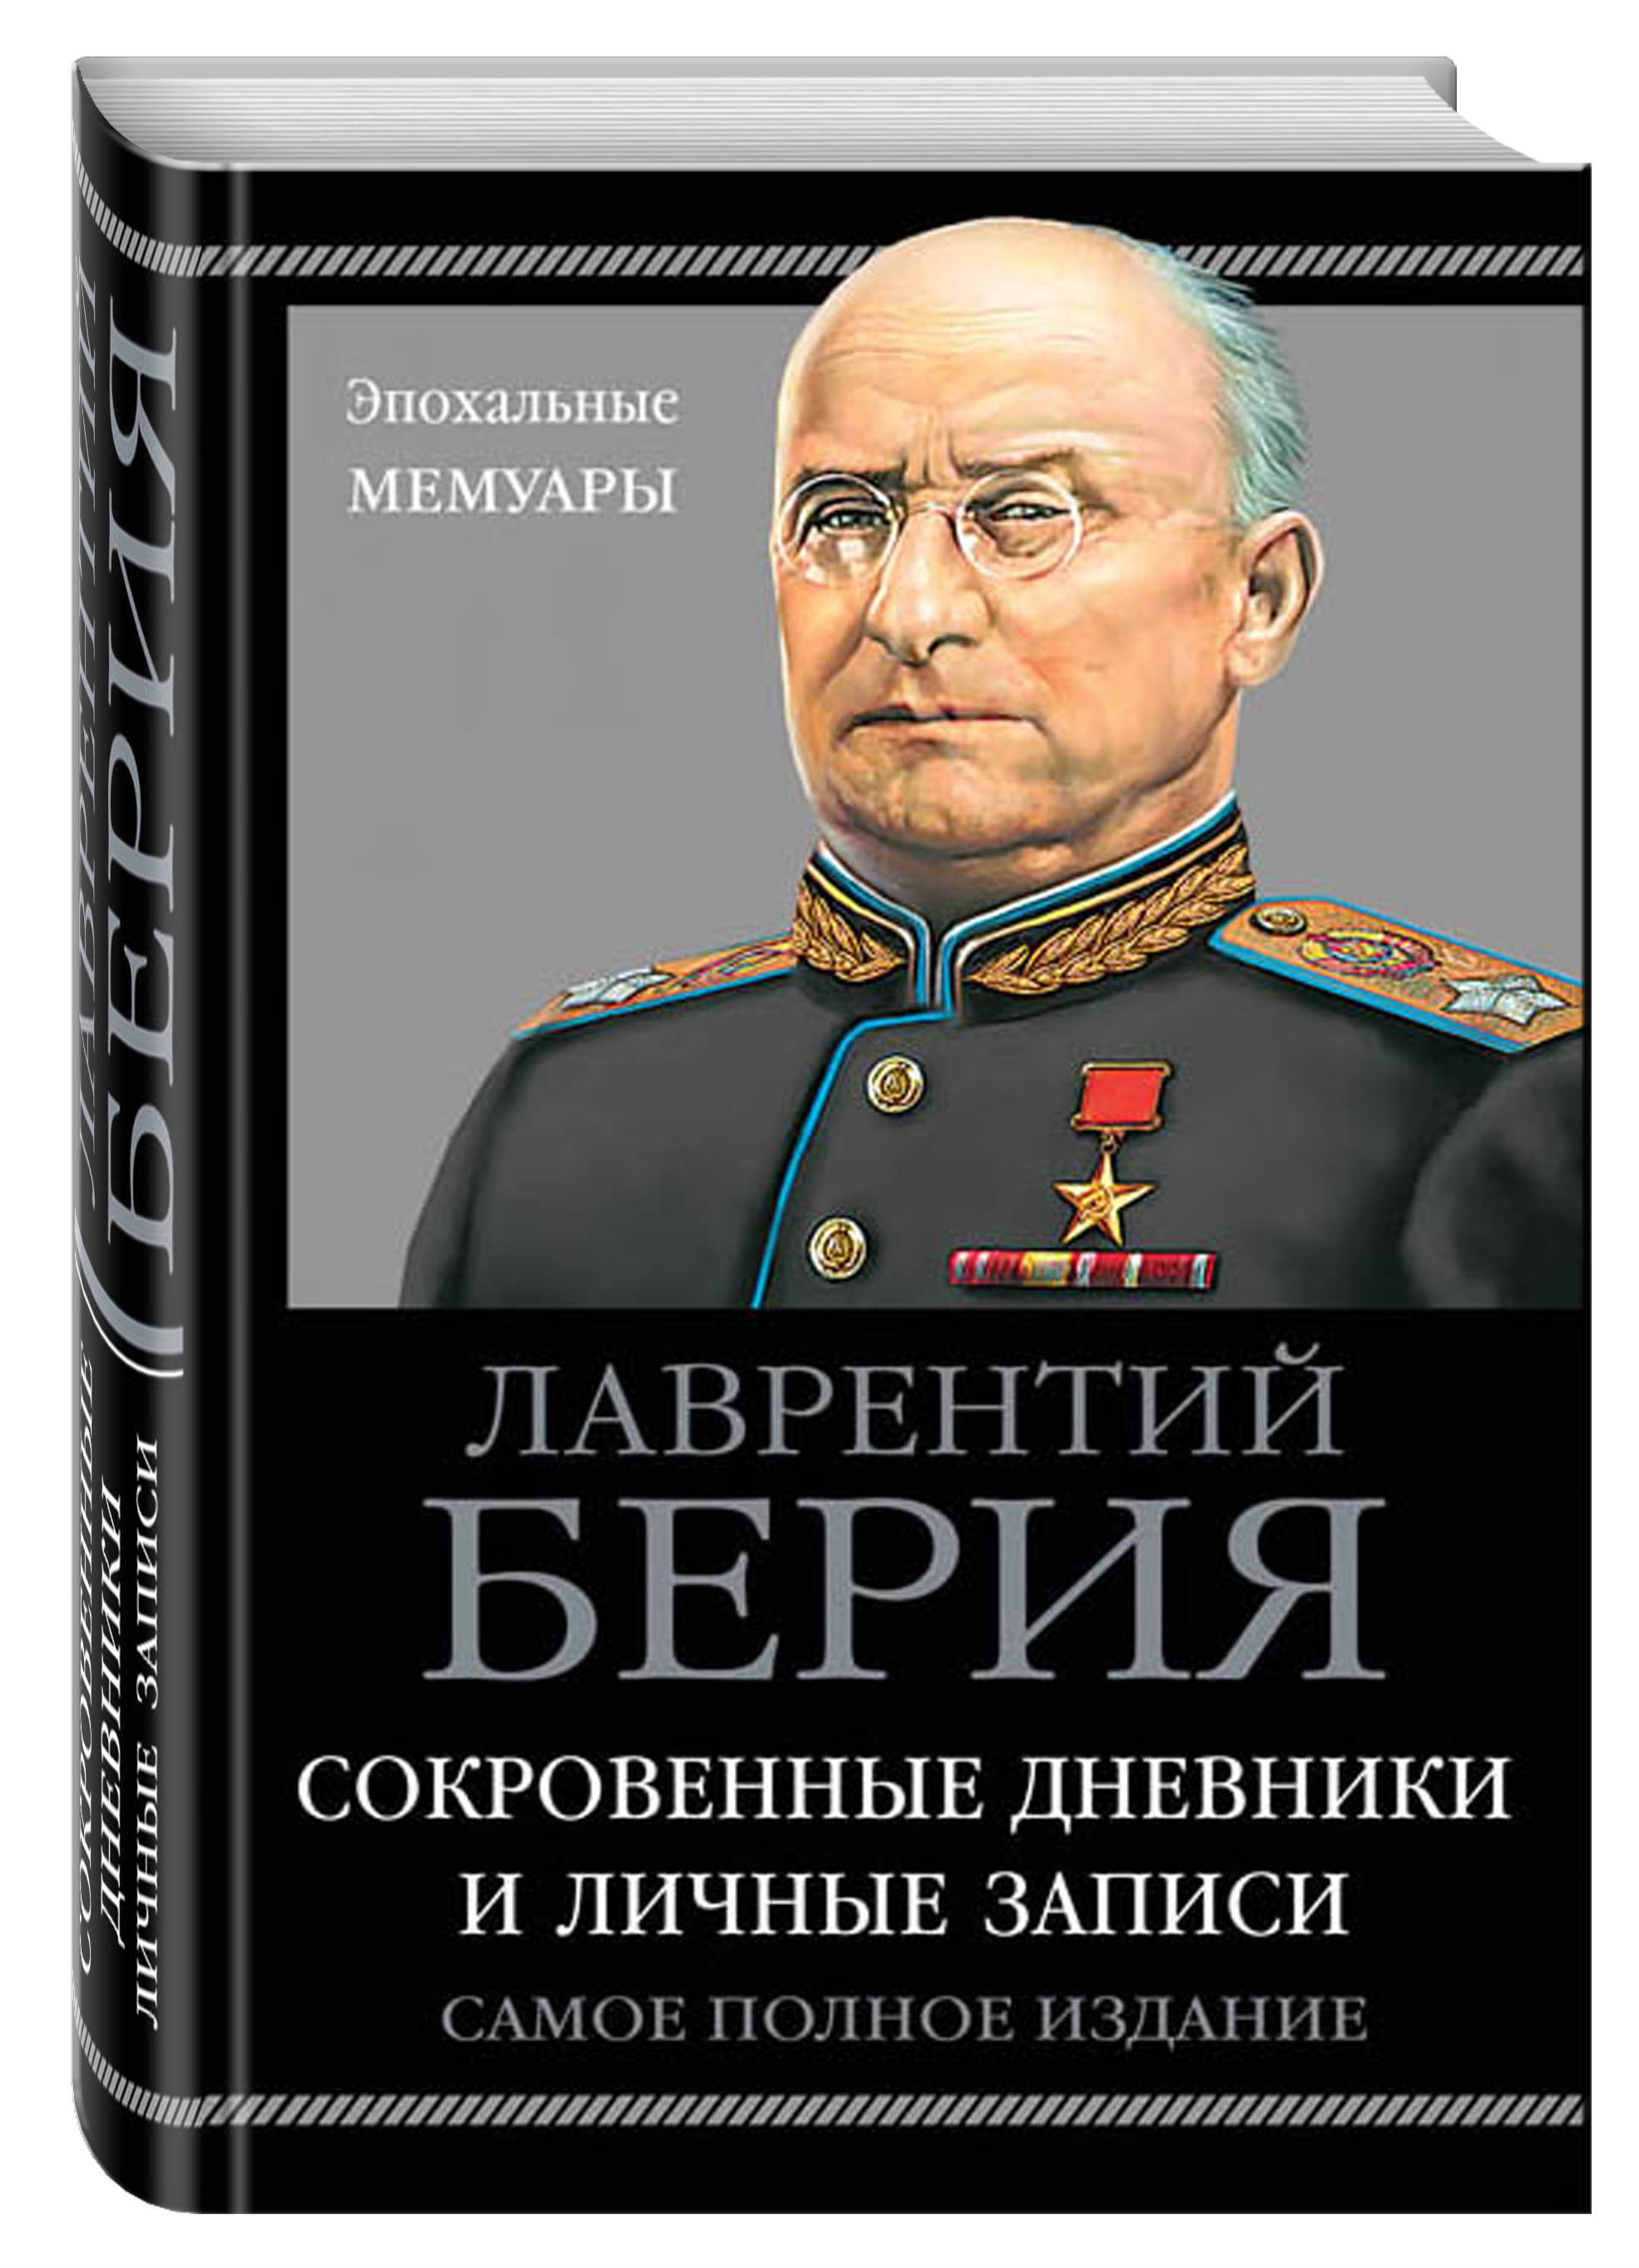 Книга недели: кем были фавориты российских правителей